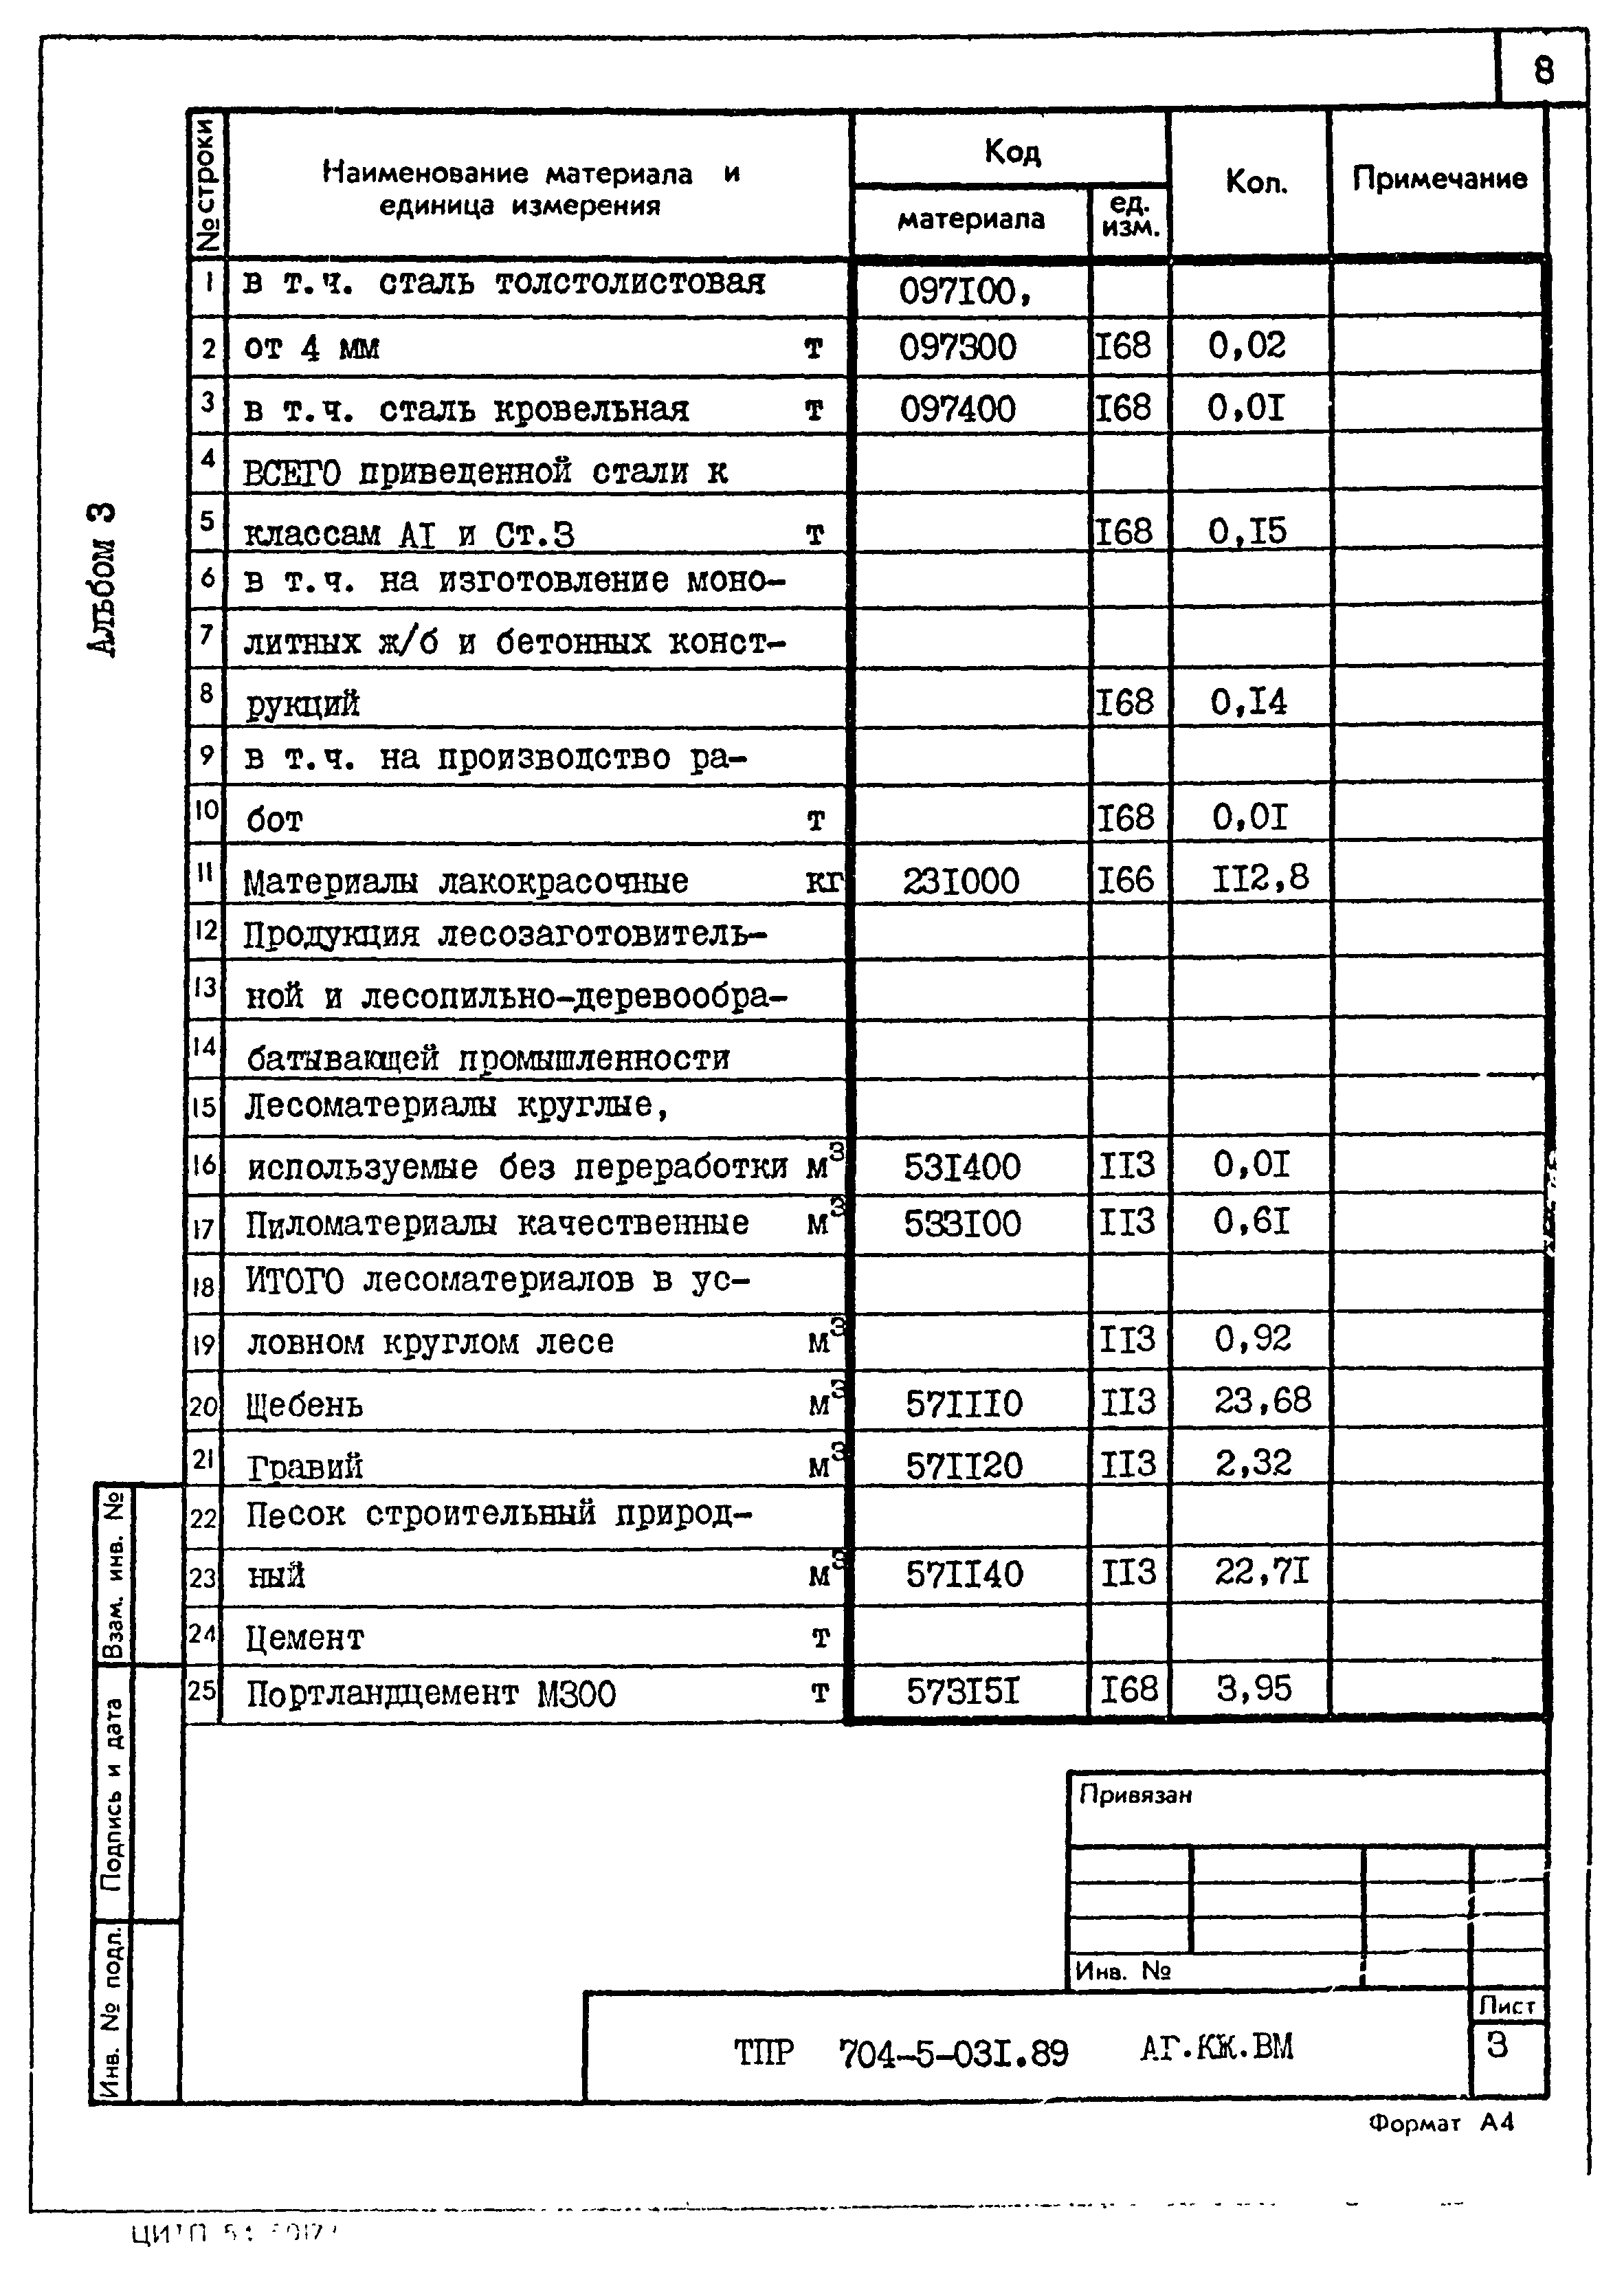 Типовые проектные решения 704-5-031.89